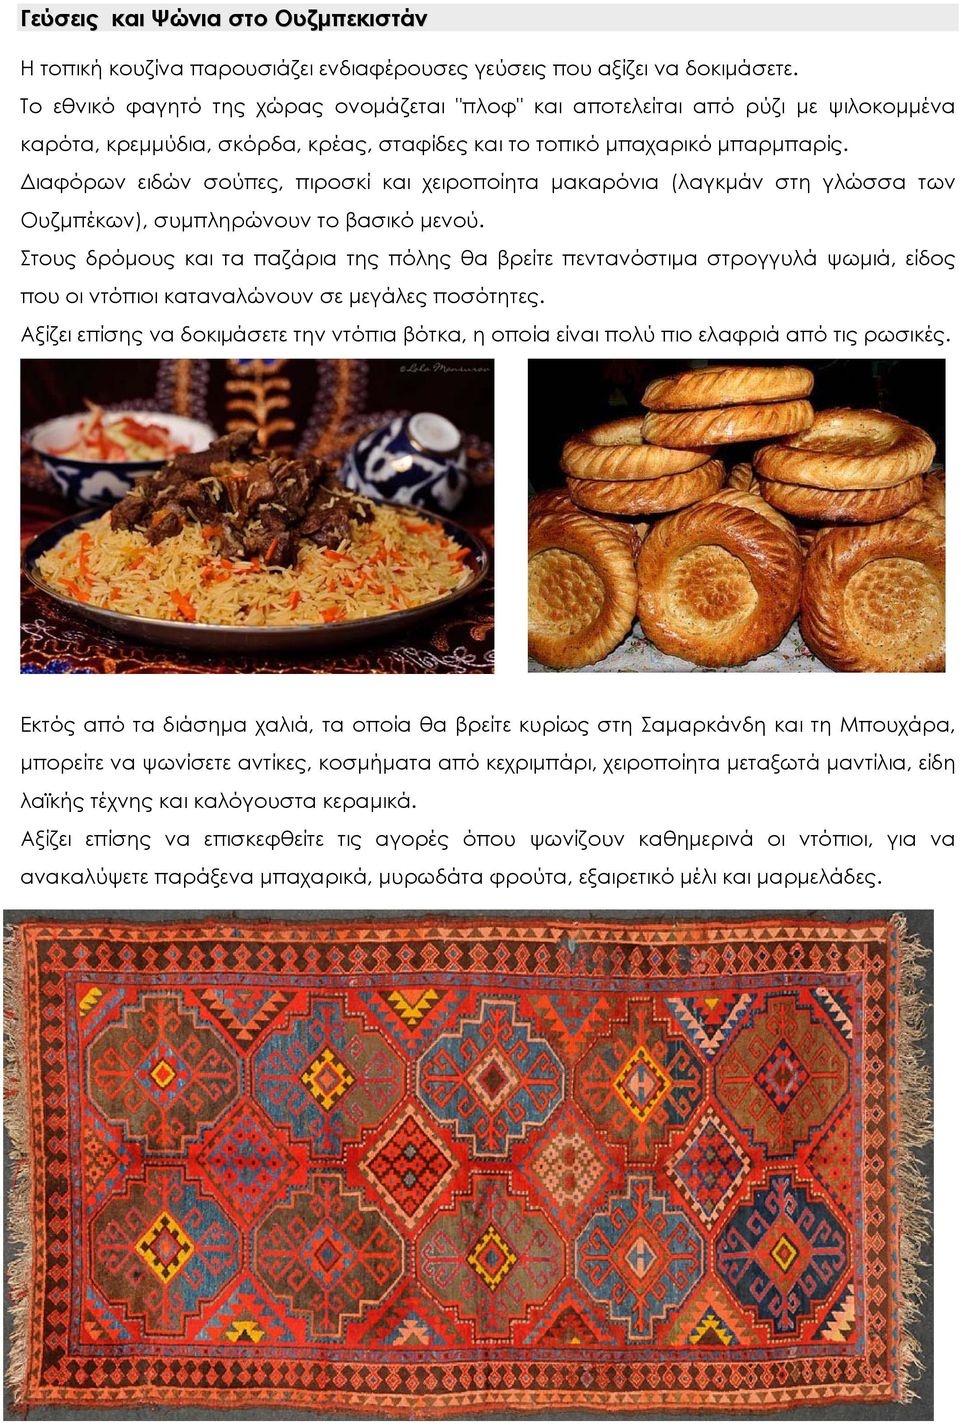 Διαφόρων ειδών σούπες, πιροσκί και χειροποίητα μακαρόνια (λαγκμάν στη γλώσσα των Ουζμπέκων), συμπληρώνουν το βασικό μενού.